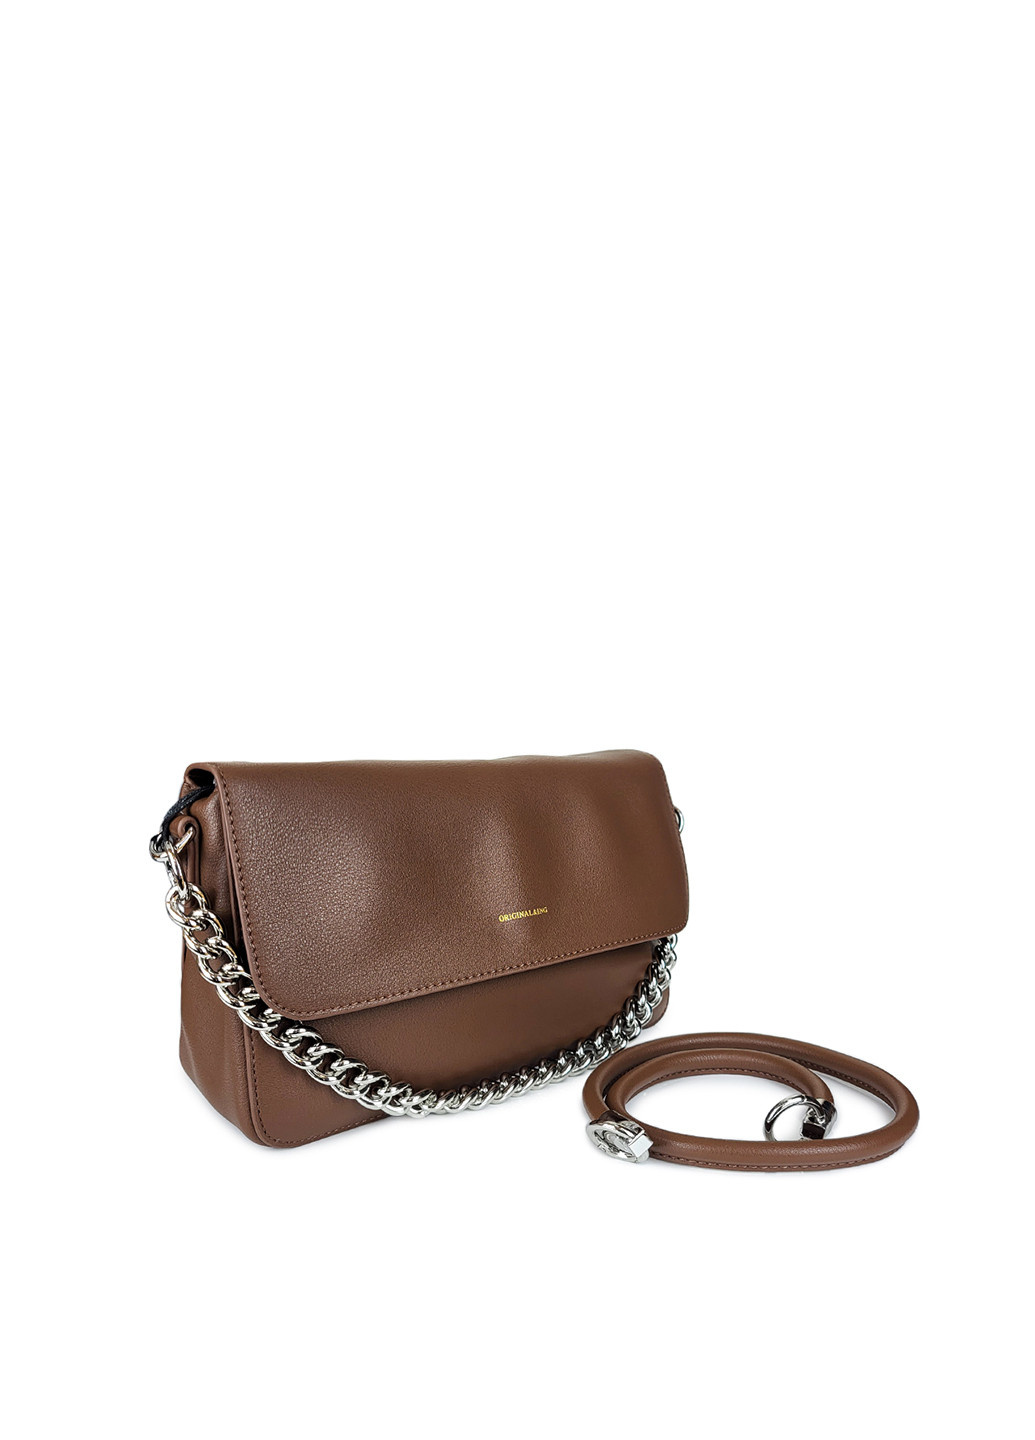 Кожаная сумочка с цепочкой коричневая,,BD56027 кор Fashion (276390281)